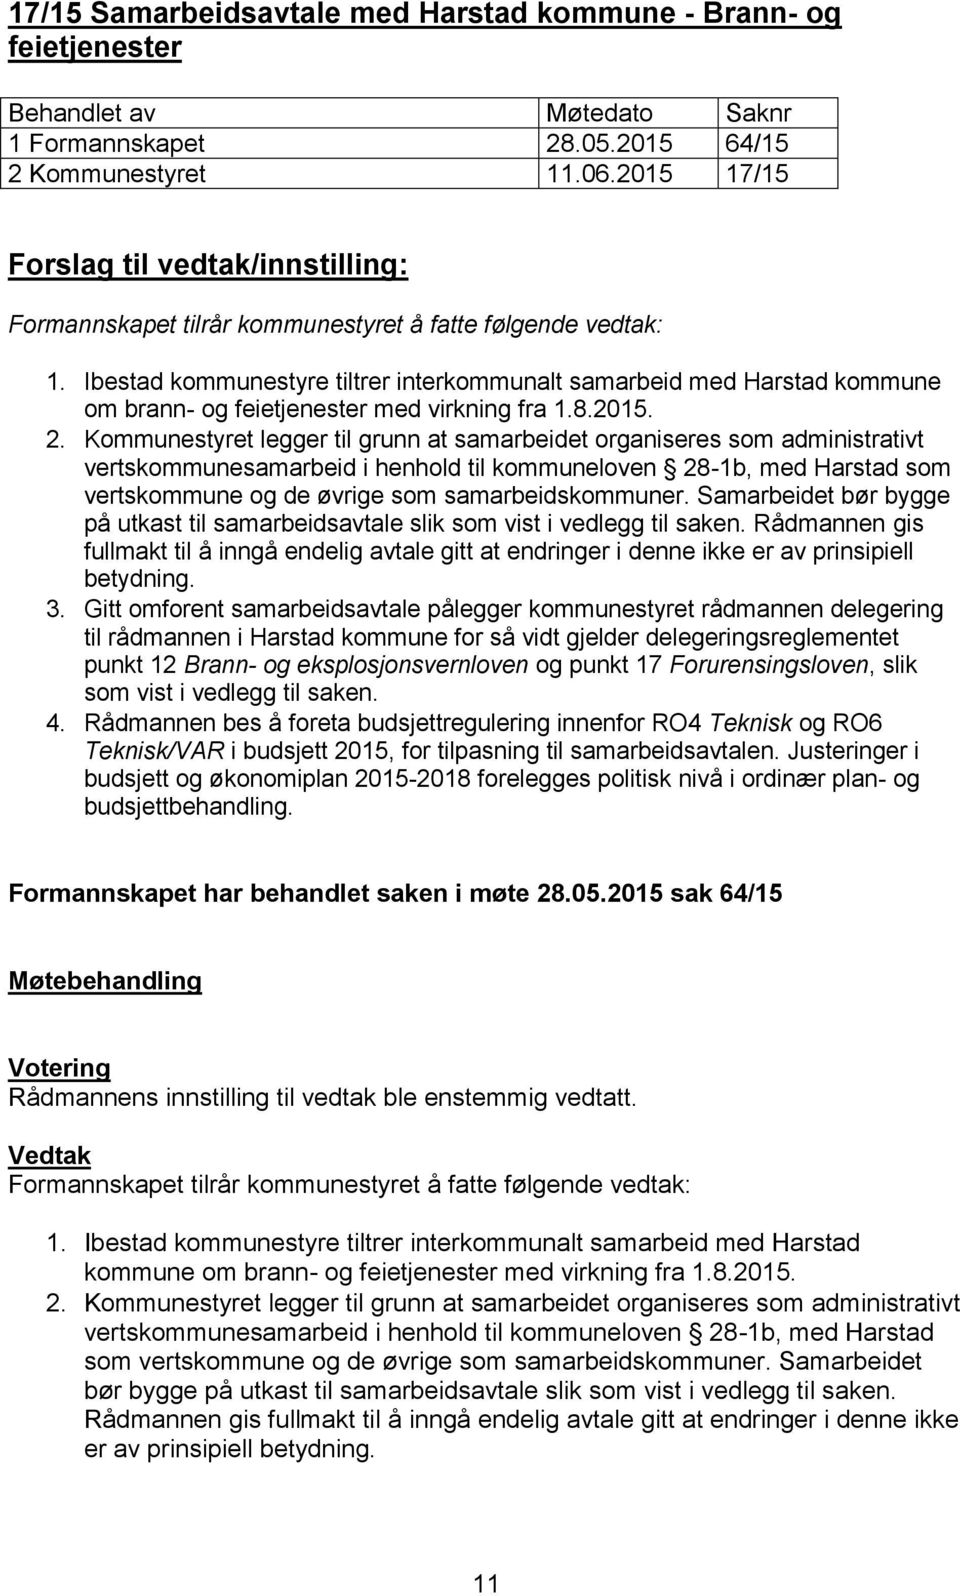 Kommunestyret legger til grunn at samarbeidet organiseres som administrativt vertskommunesamarbeid i henhold til kommuneloven 28-1b, med Harstad som vertskommune og de øvrige som samarbeidskommuner.